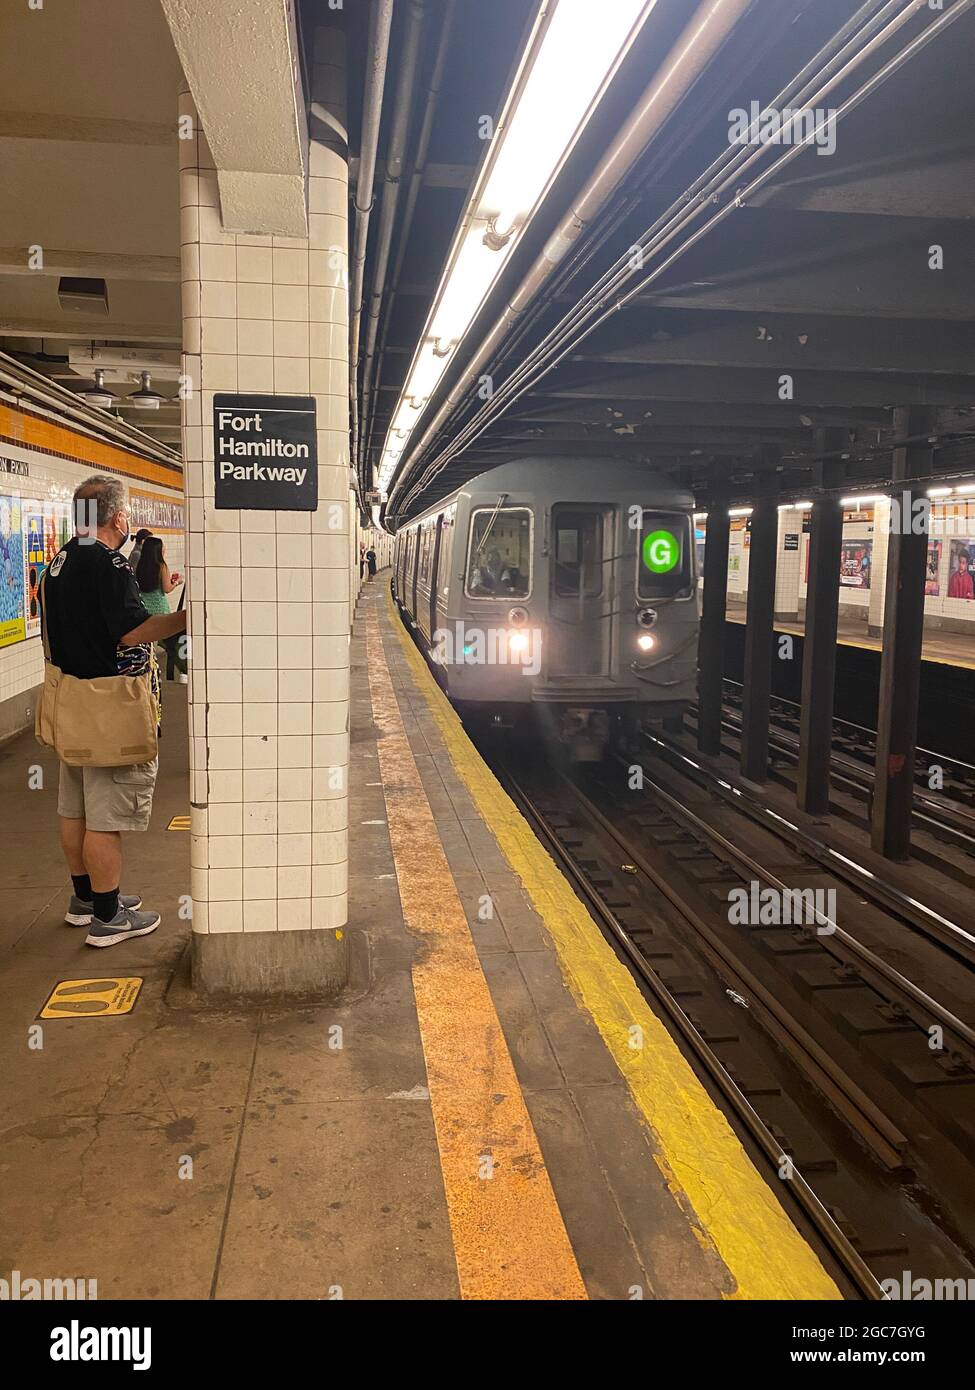 El tren G entra en la estación de metro Fort Hamilton Parkway en el barrio de Windsor Terrace en Brooklyn, Nueva York. Foto de stock